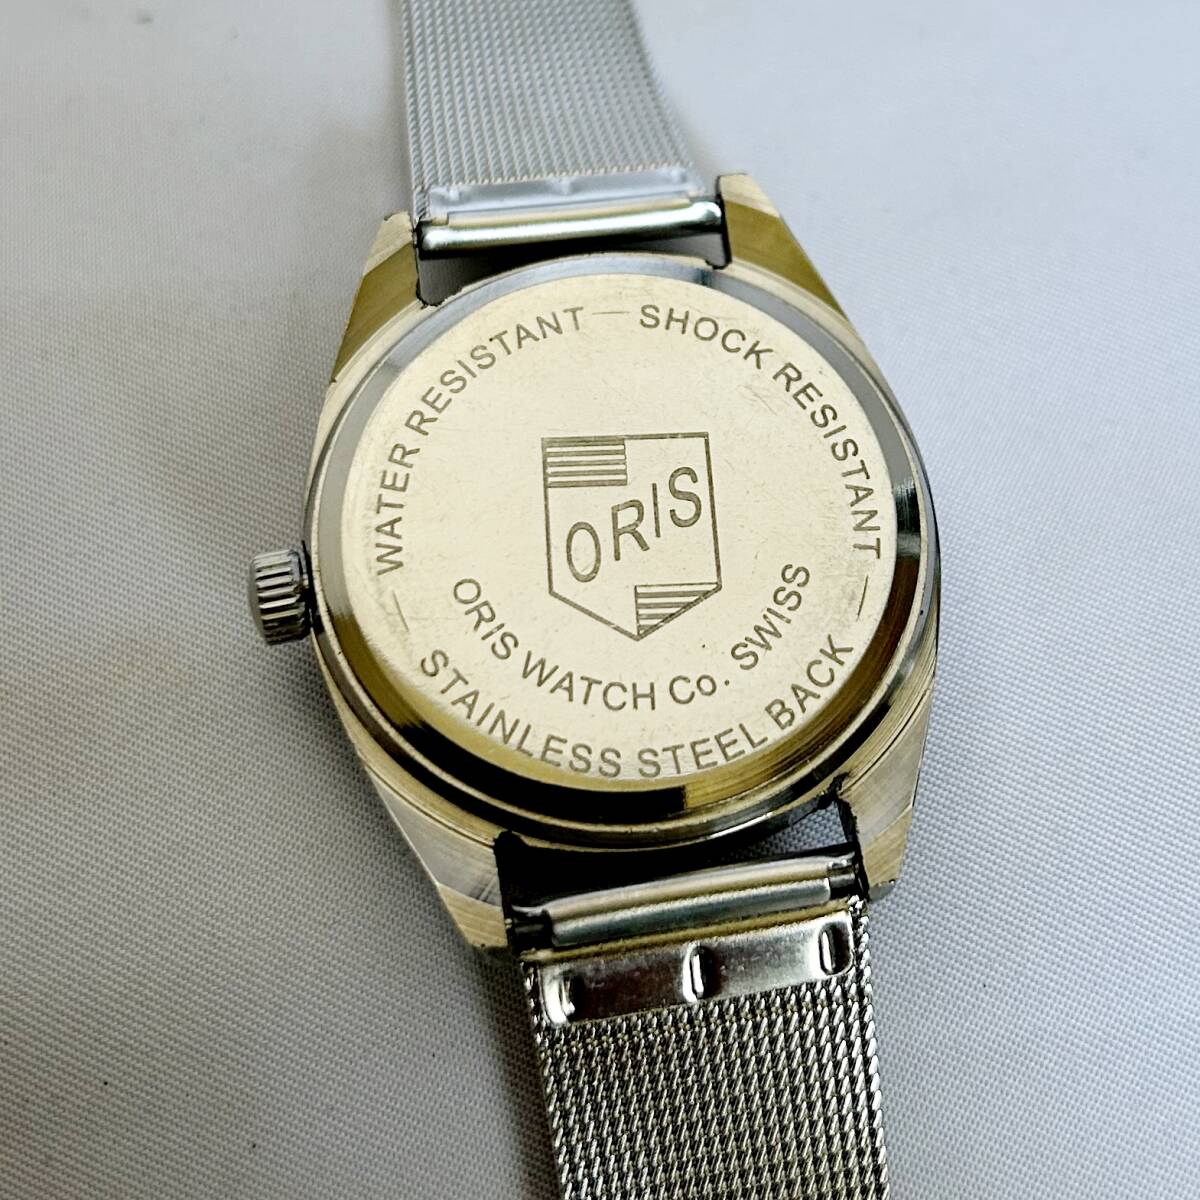 スイスの老舗ブランドORIS 紳士用腕時計 ブルーダイアル シルバーボディー ヴィンテージ 手巻機械式 35mm ステンレスベルト 17石 ST-96の画像8